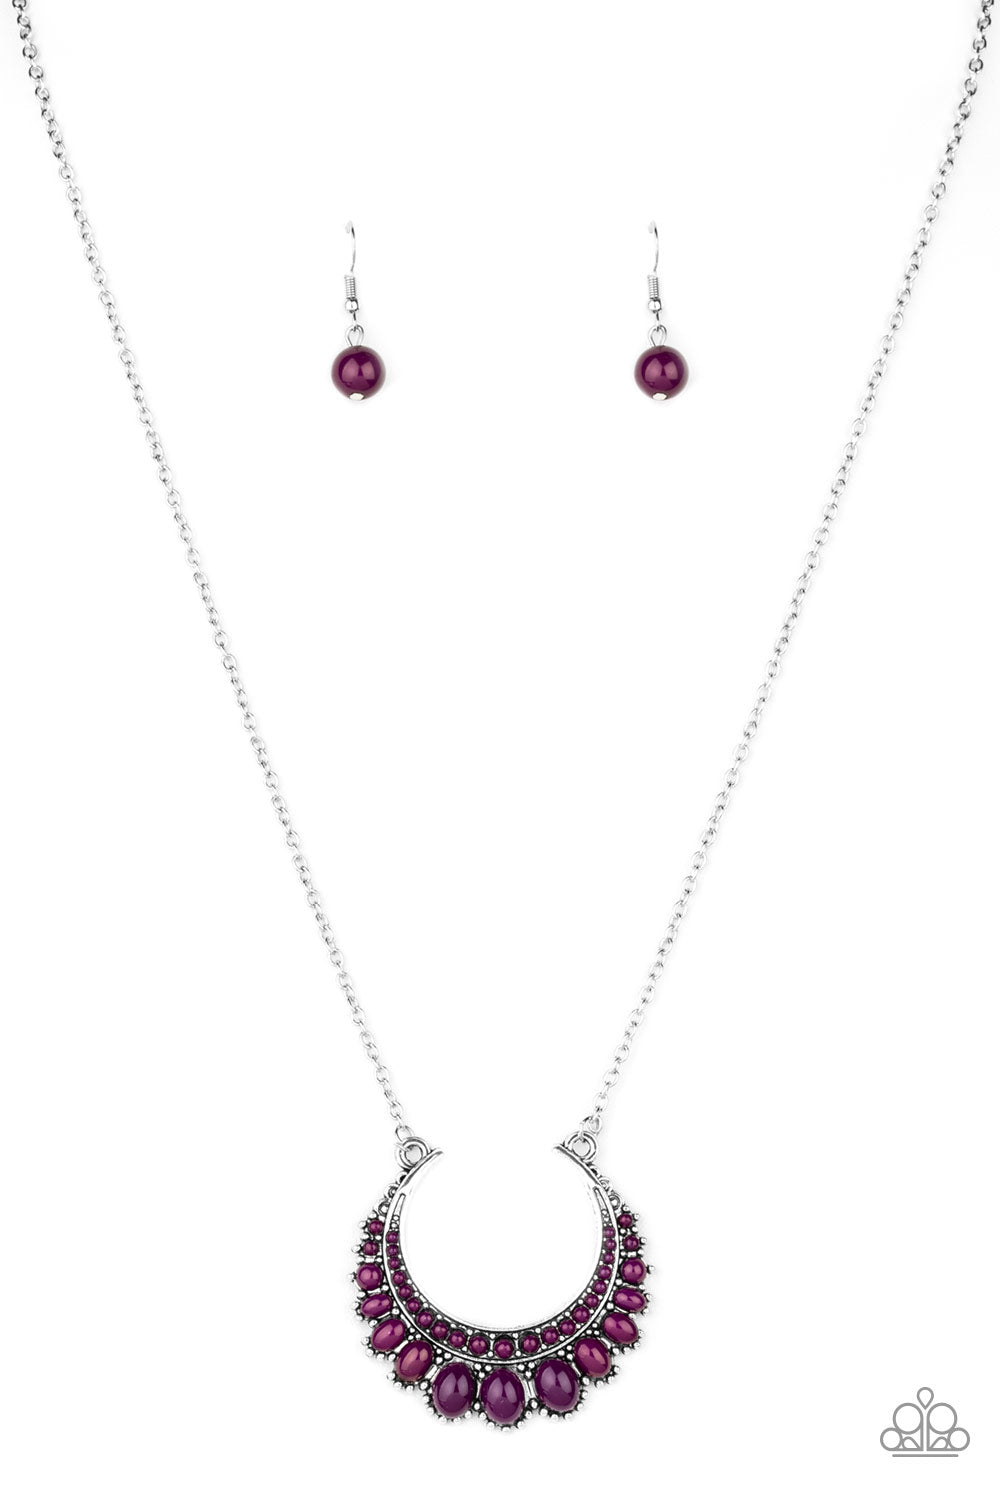 Count to Zen - purple - Paparazzi necklace